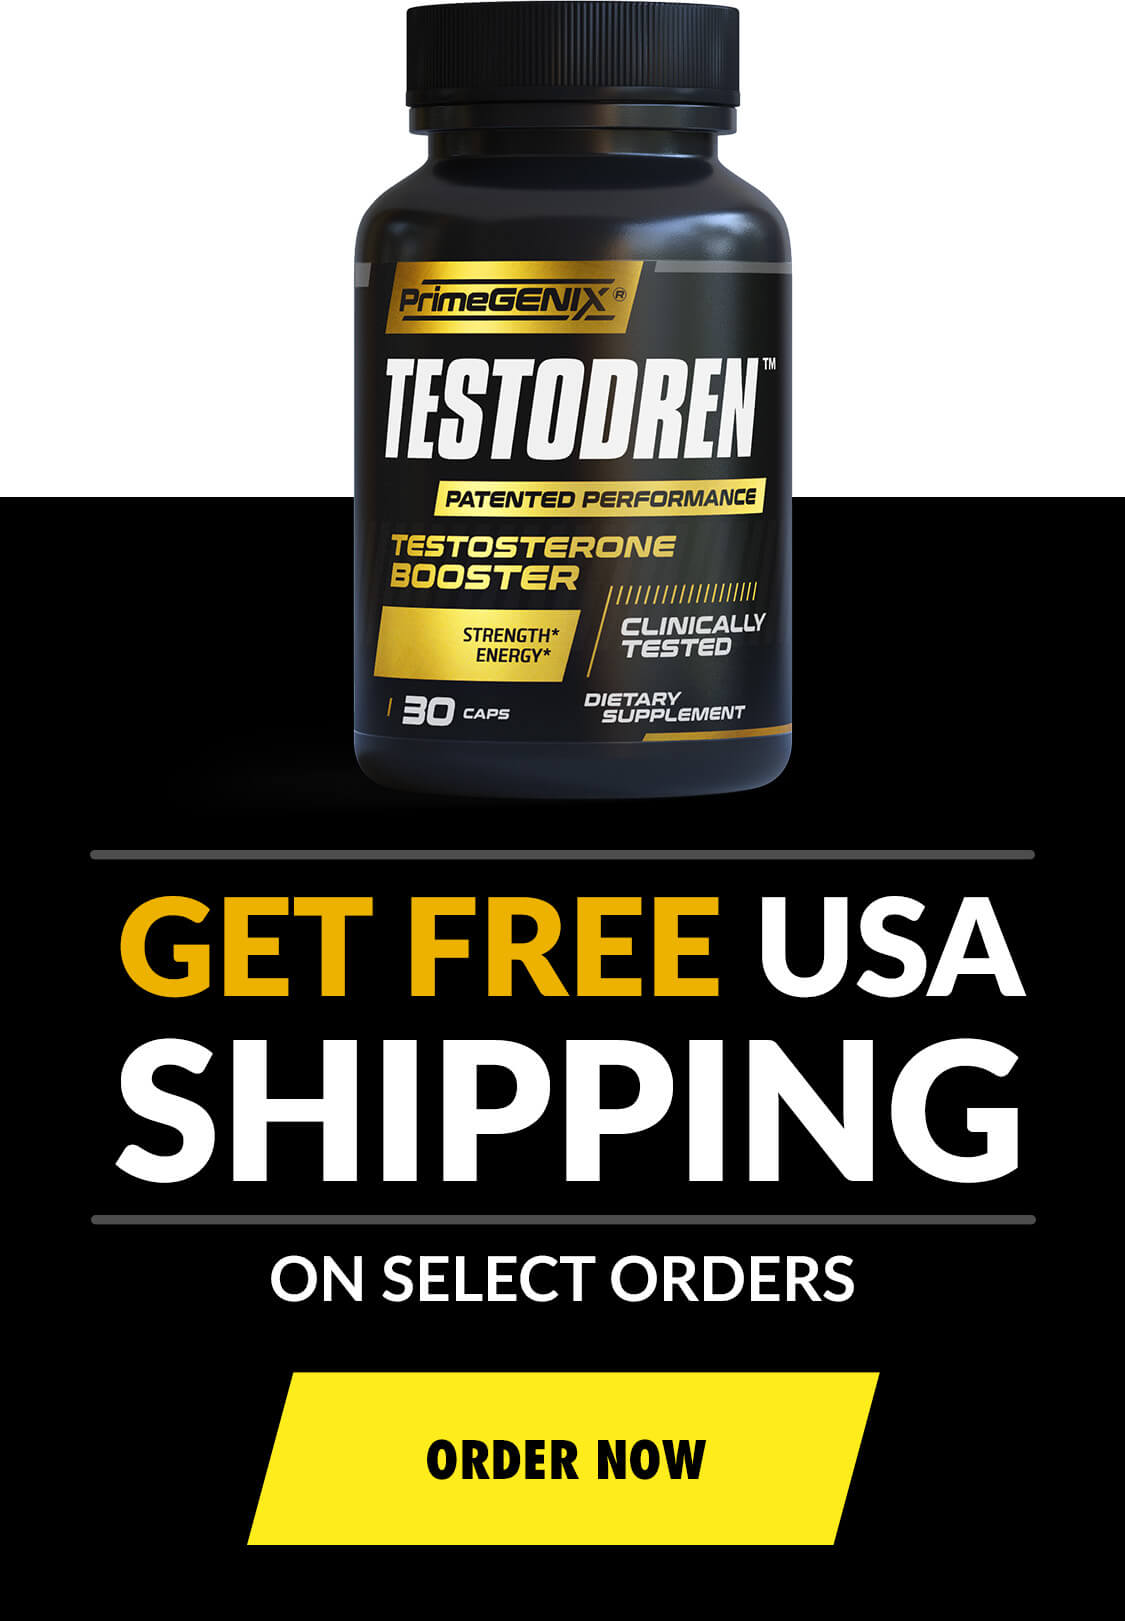 Get Free USA Shipping on Testodren